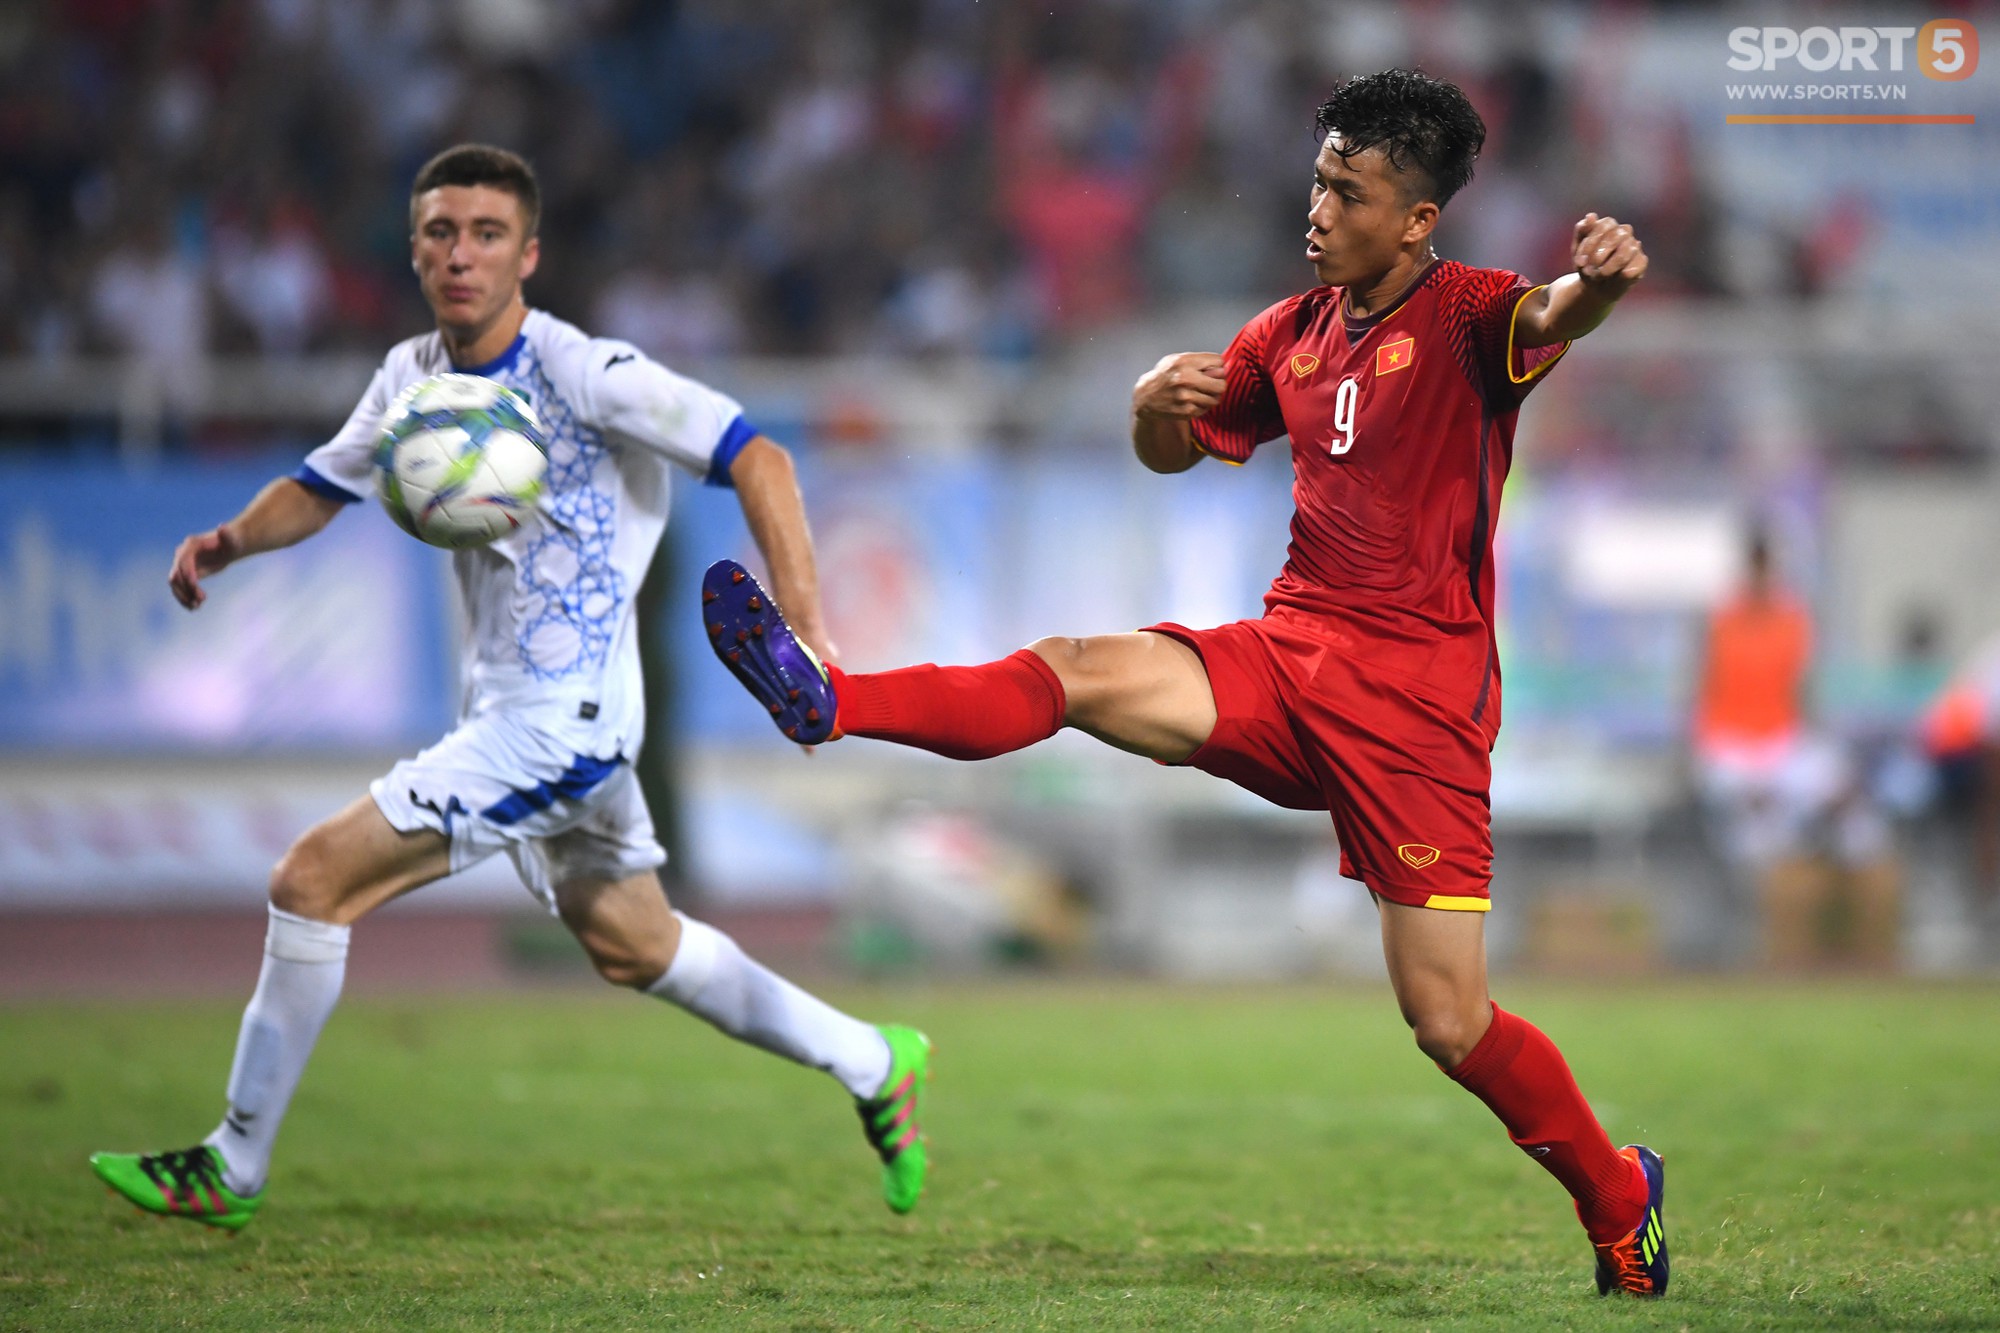 Văn Đức tỏa sáng với 1 pha xử lý đẳng cấp, U23 Việt Nam hòa U23 Uzbekistan trong trận đấu cuối cùng - Ảnh 3.